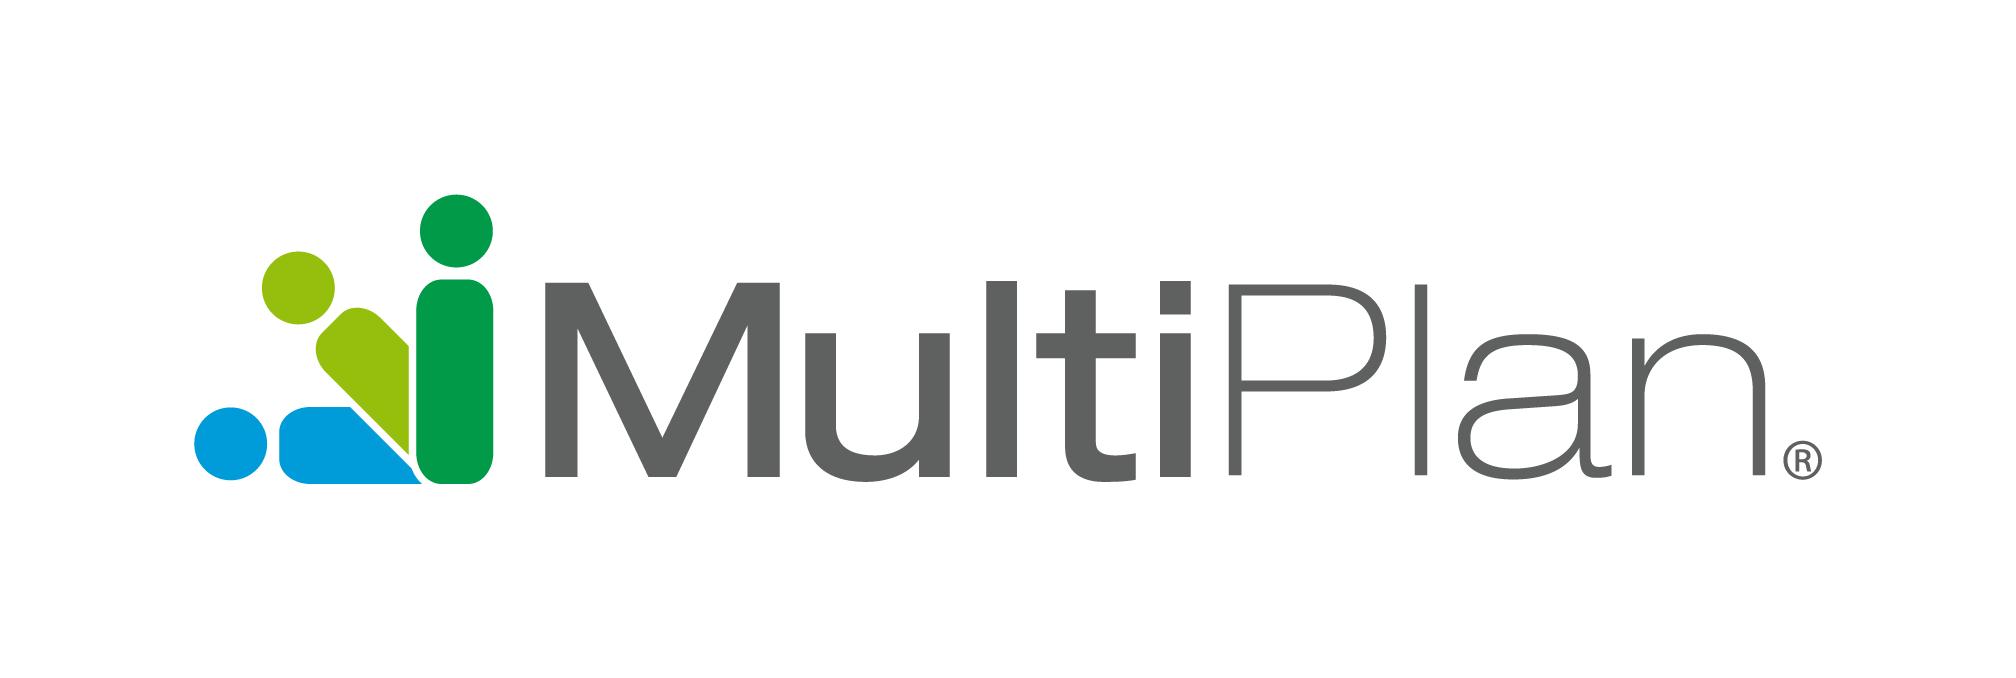 Multiplan_Logo.jpeg